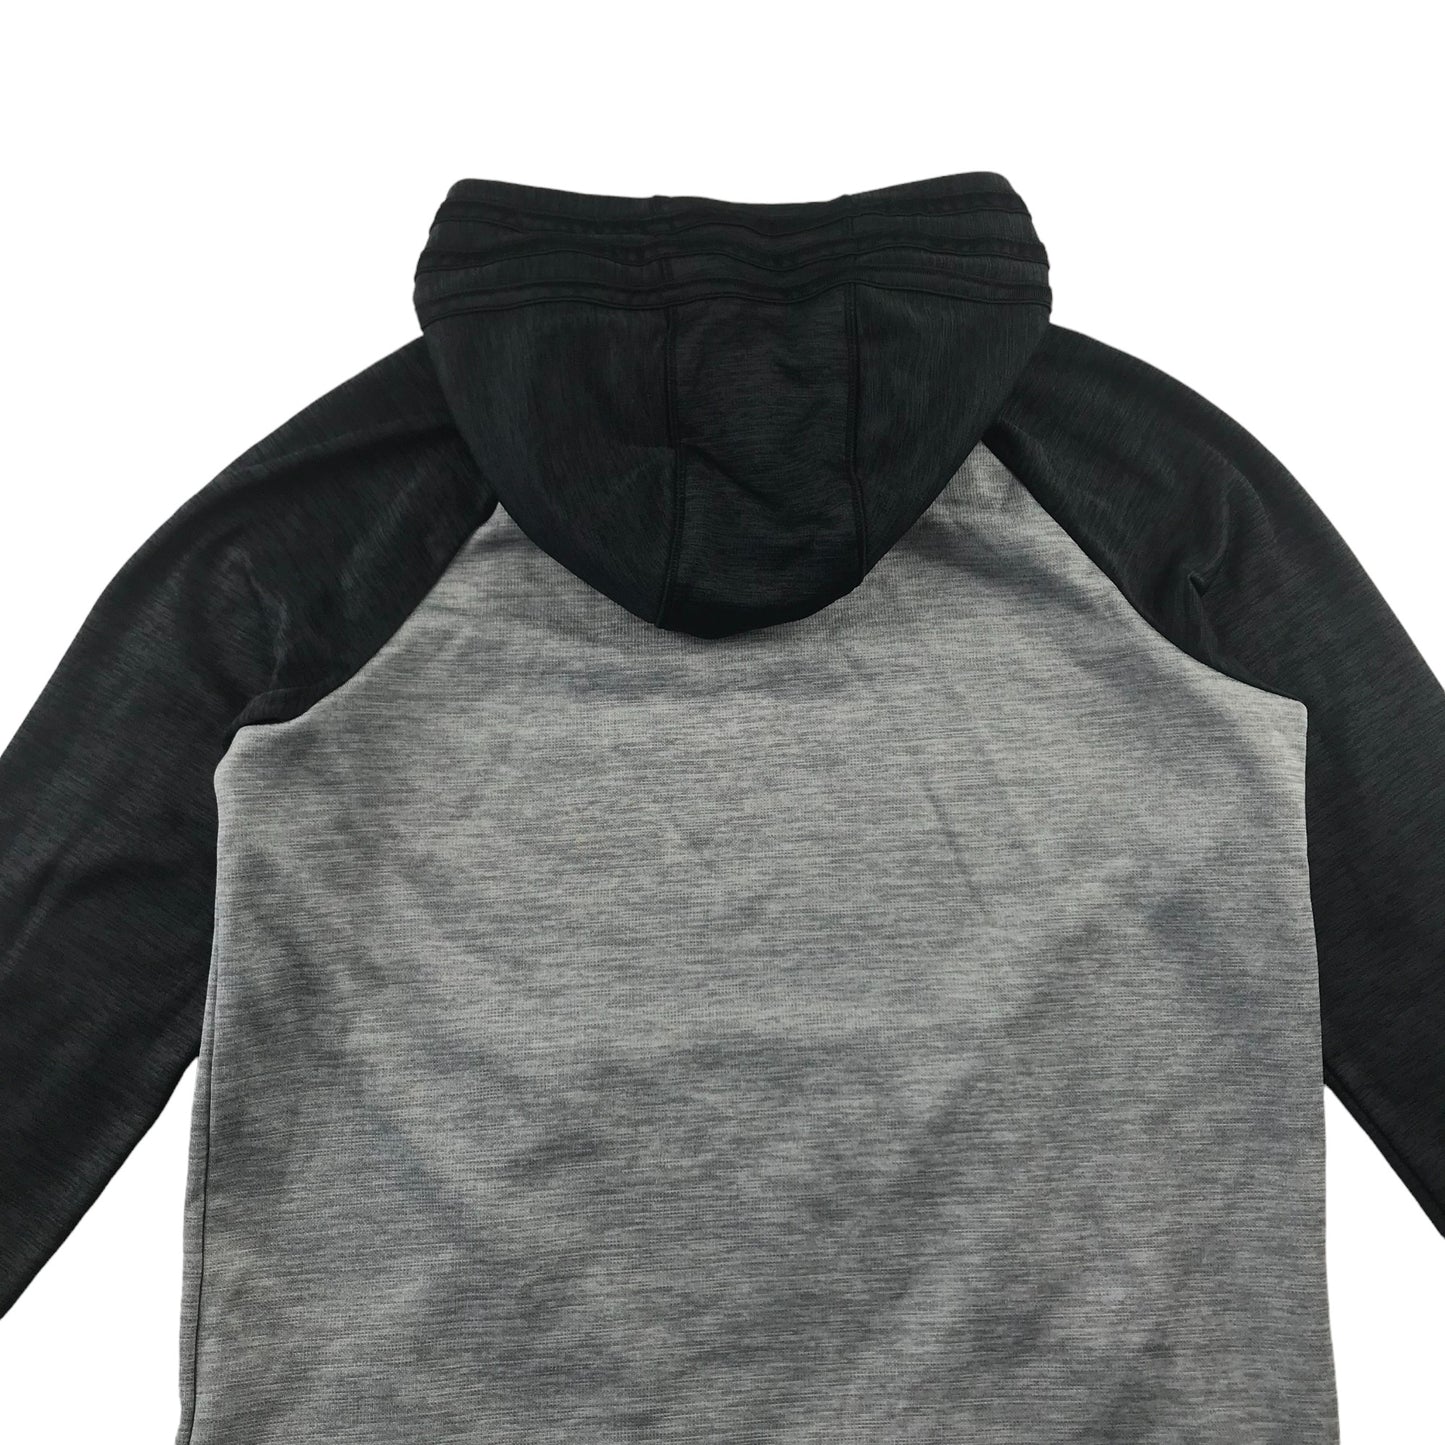 Adidas Hoodie Age 7 Grey Body Black Hood and Long Sleeves